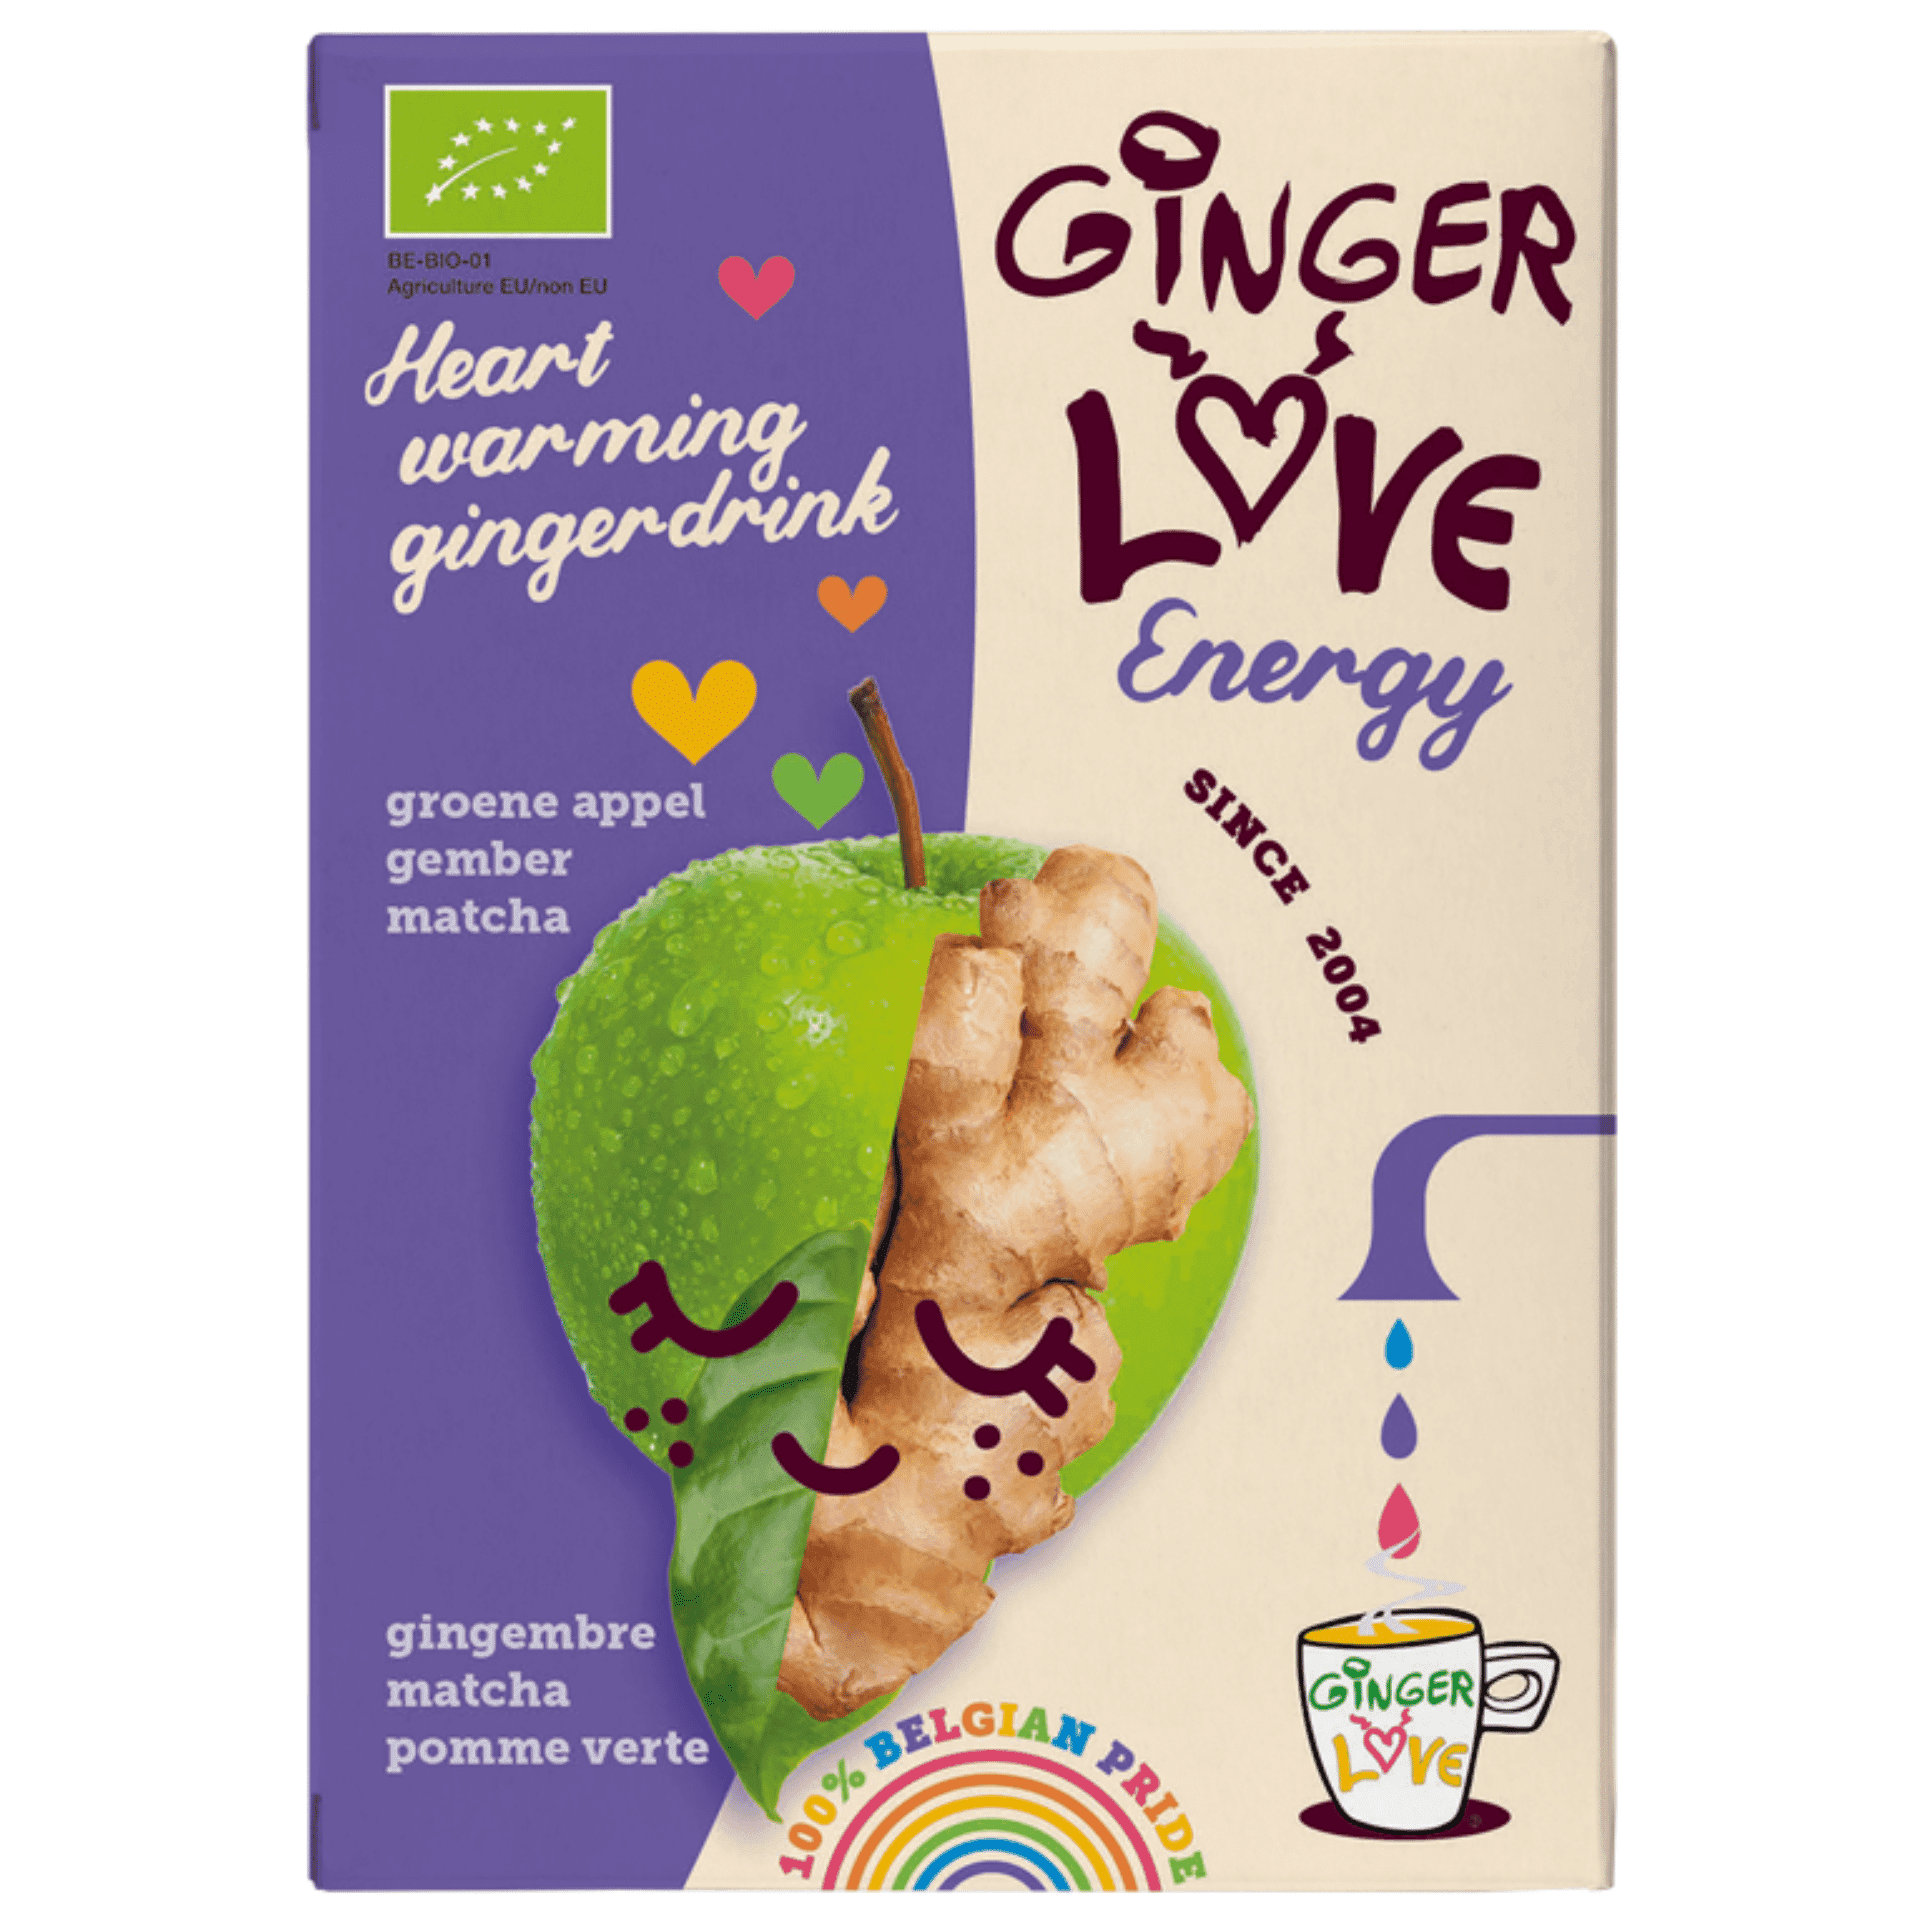 Gingerlove Energy 3x14g